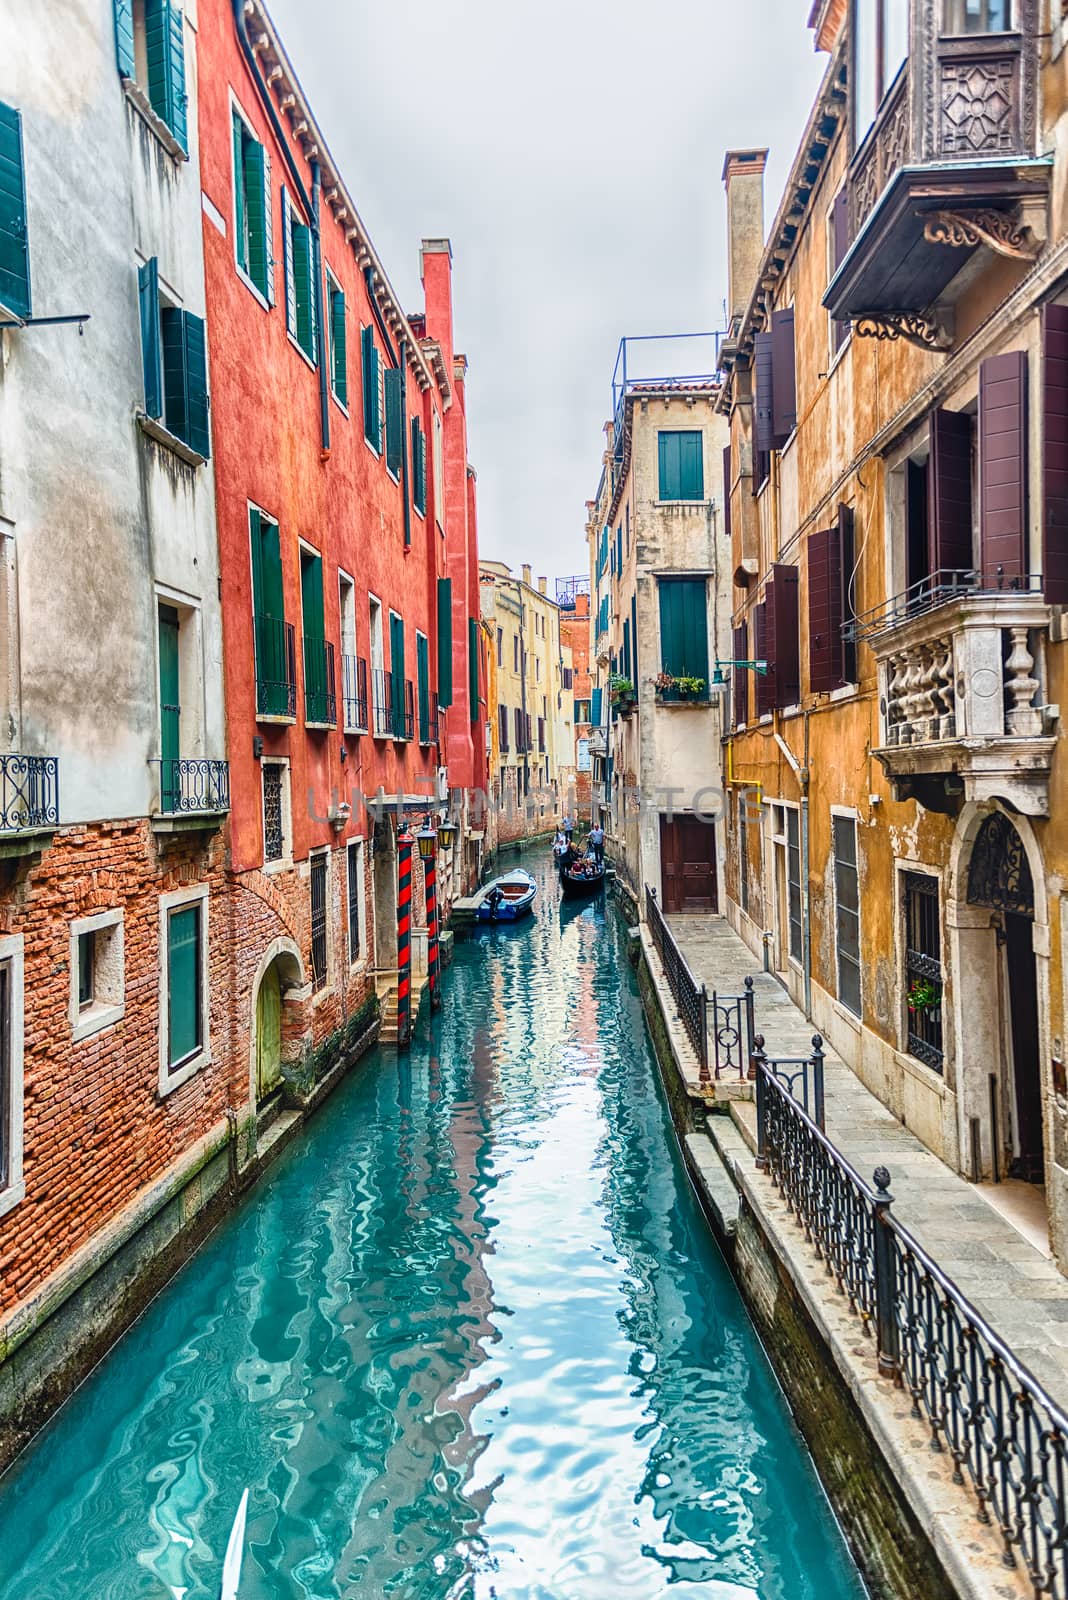 View over the canal Rio de la Vesta, Venice, Italy by marcorubino